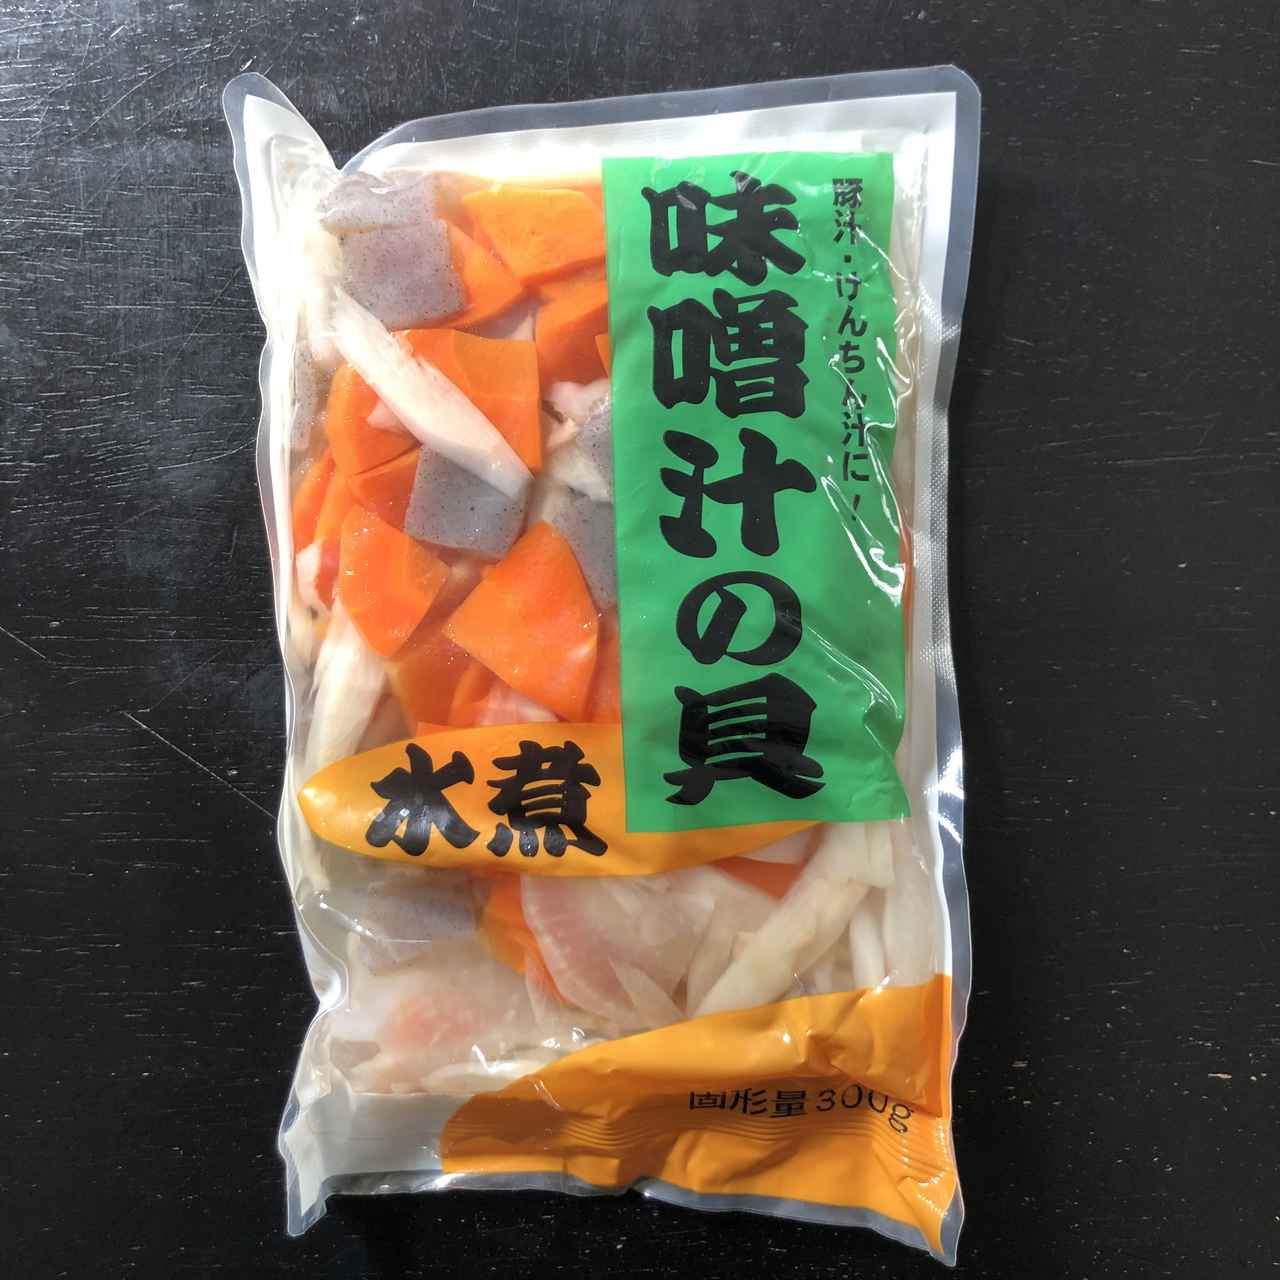 業務スーパーのアイテムで超簡単な豚汁を作る！ 『味噌汁の具』を使った豚汁レシピ(お役立ちキャンプ情報 2020年06月13日) - 日本気象協会  tenki.jp